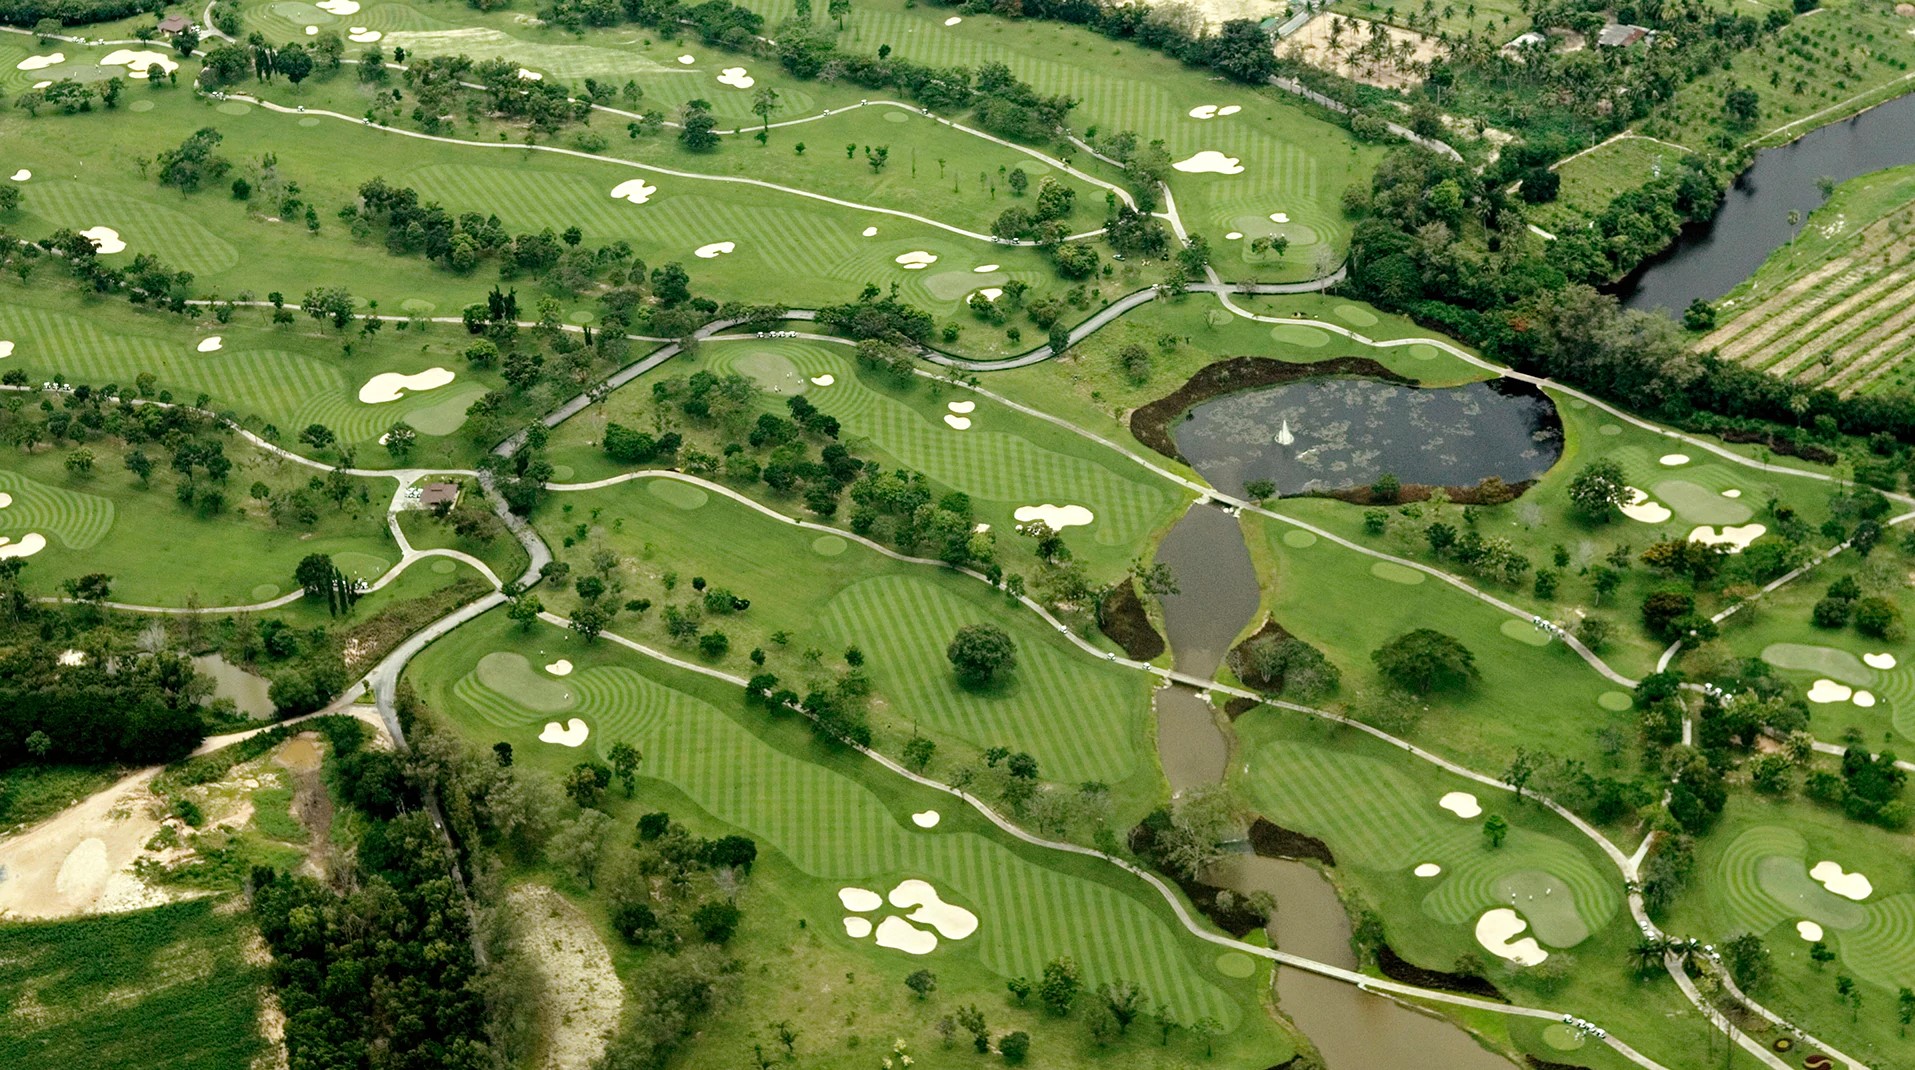 Siam Golf Club - địa điểm tổ chức giải Vô địch nghiệp dư nữ châu Á-Thái Bình Dương 2020. (Ảnh: Getty Images)